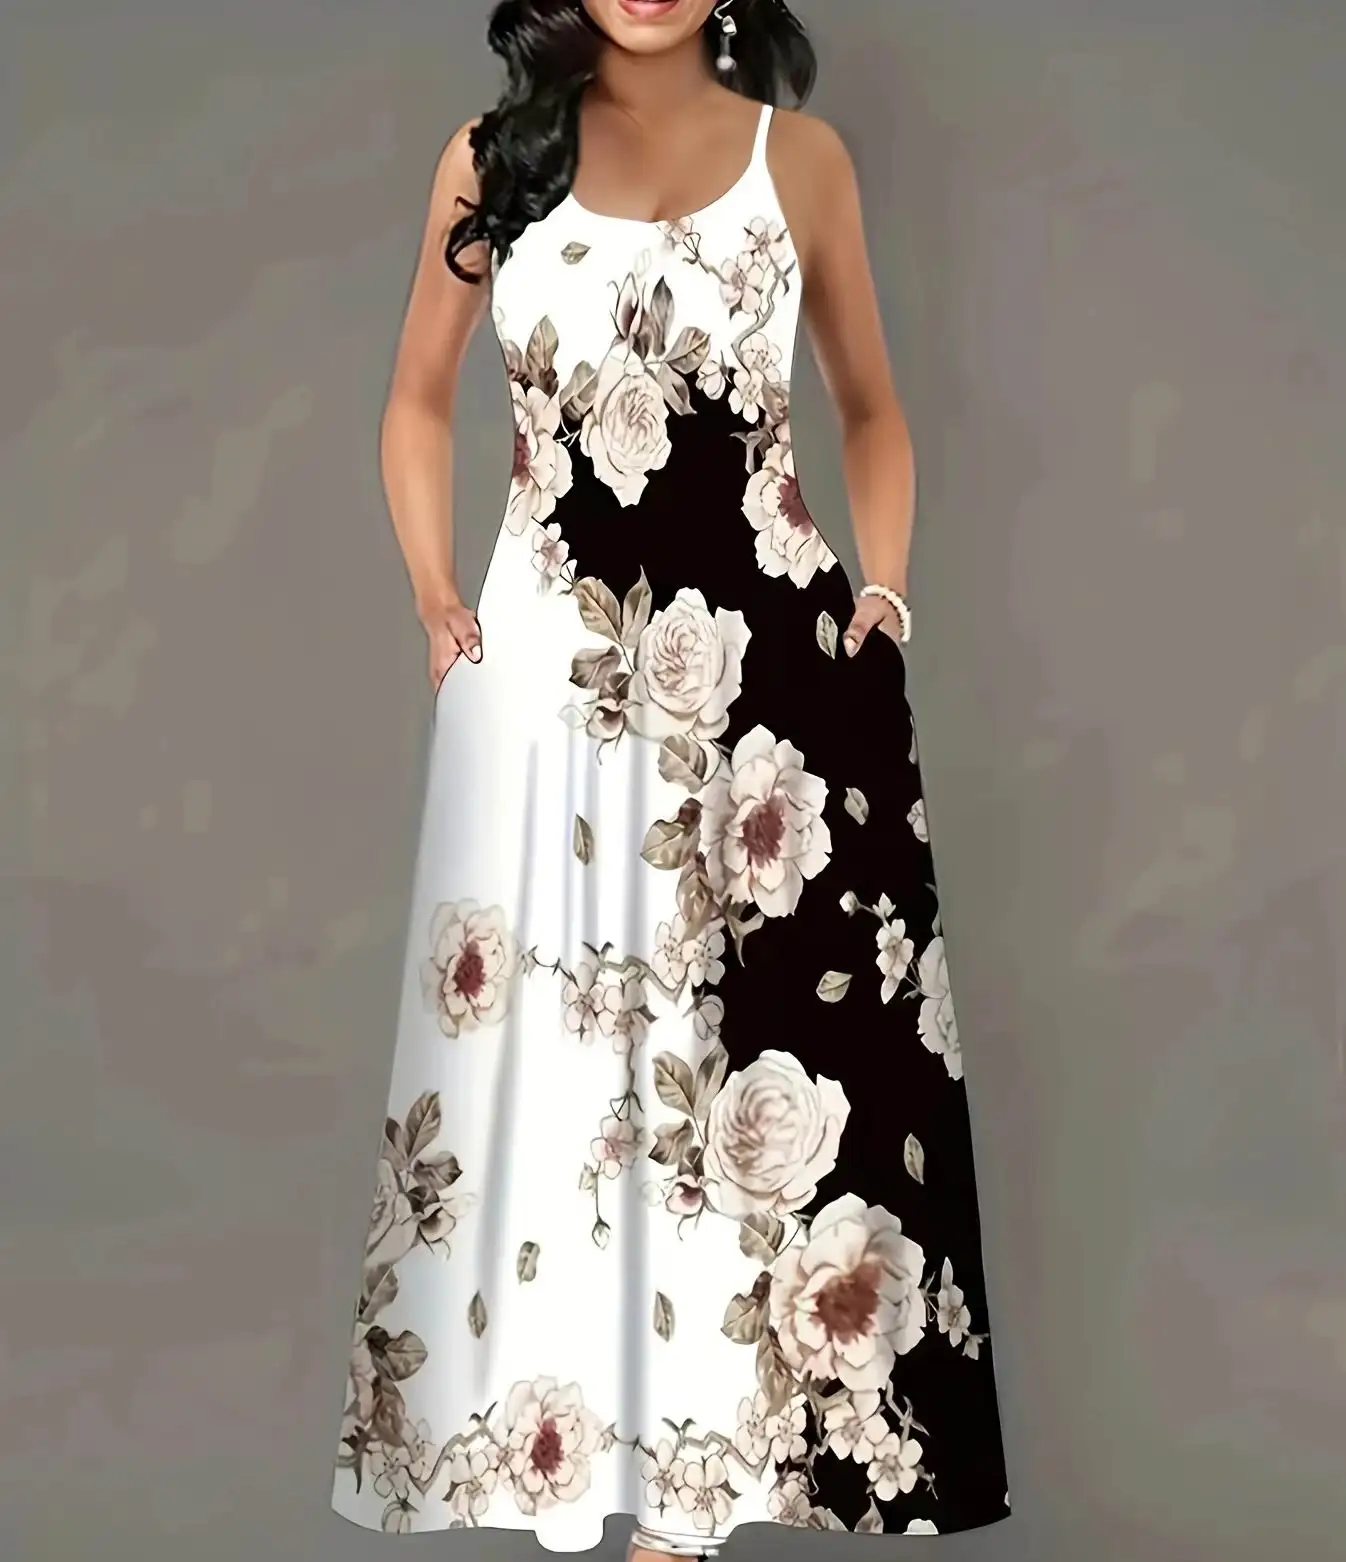 Lässige Blumendruck Damenluxus elegantes Büro Party Mode einteiliges Kleid ohne Ärmel weiches langes Kleid für Dame